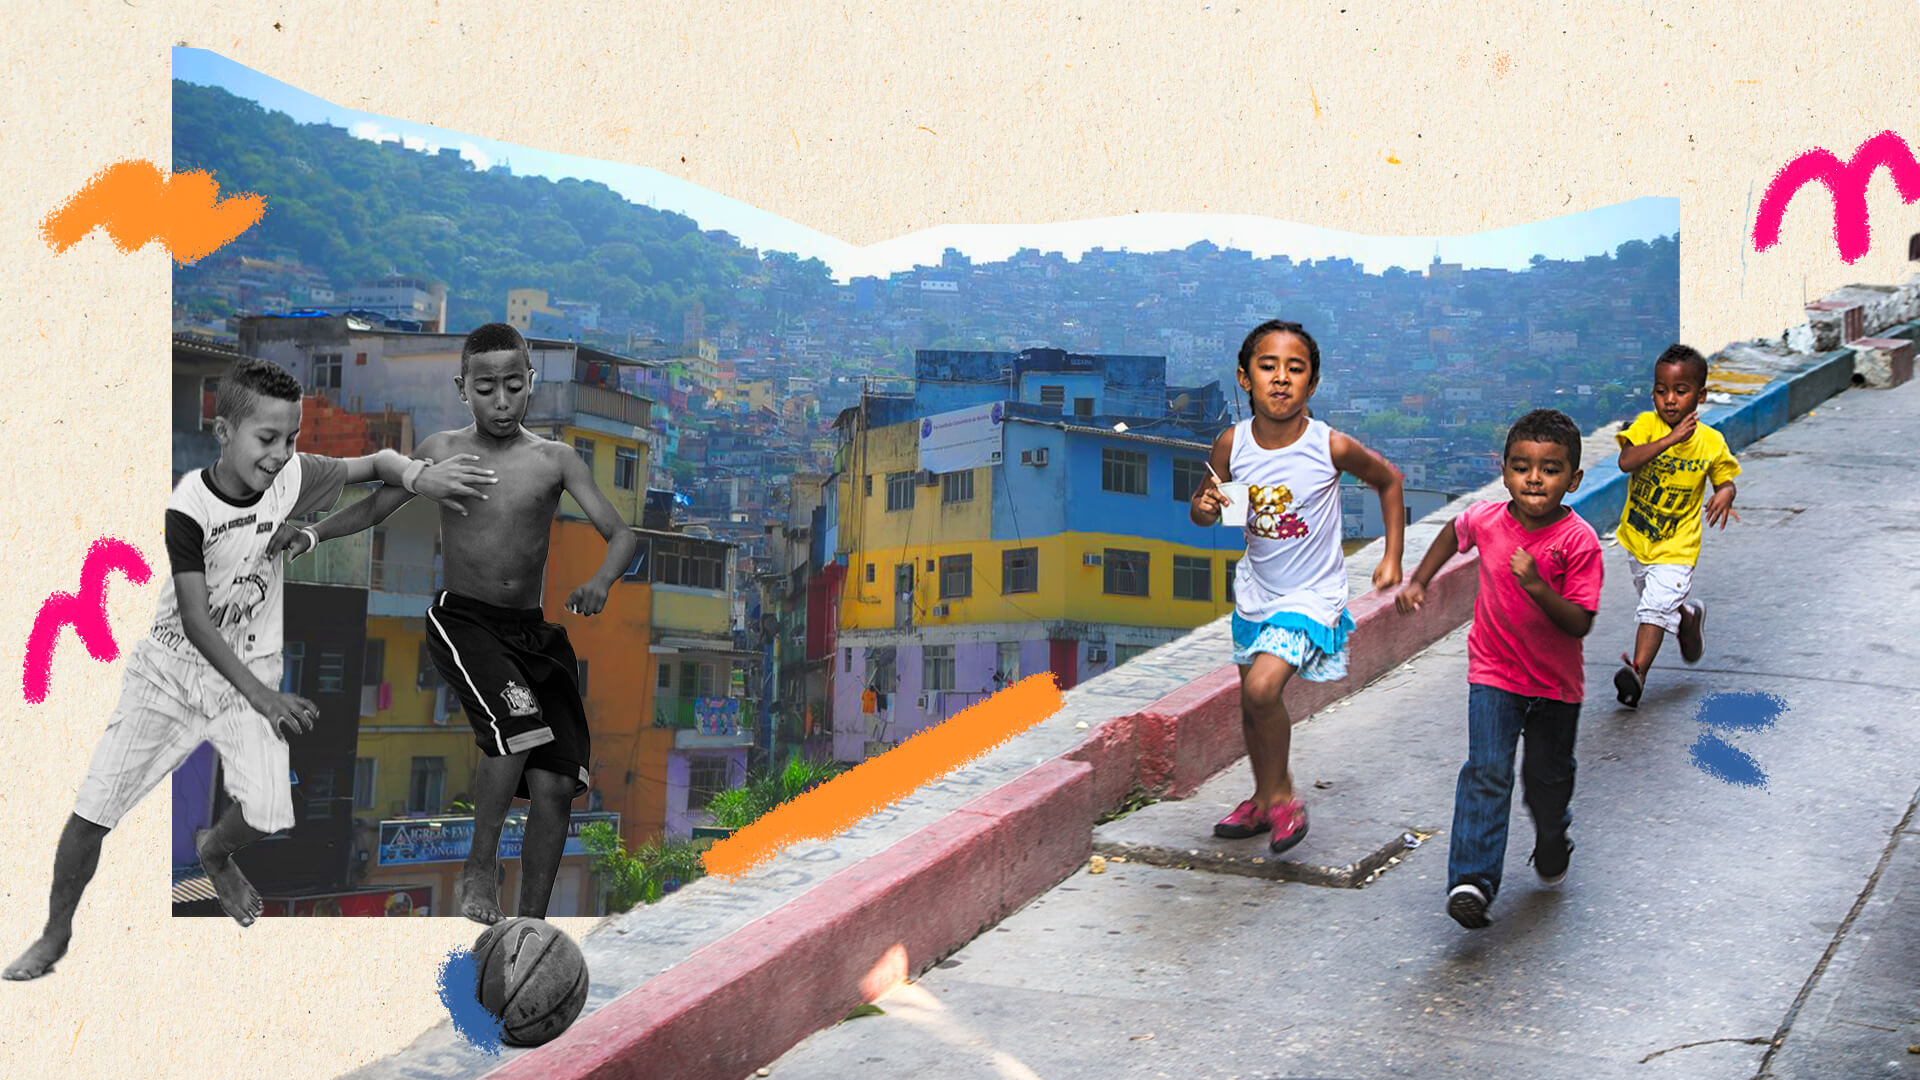 Livros sobre favela: na imagem, montagem de diversas crianças brincando em uma favela de fundo.